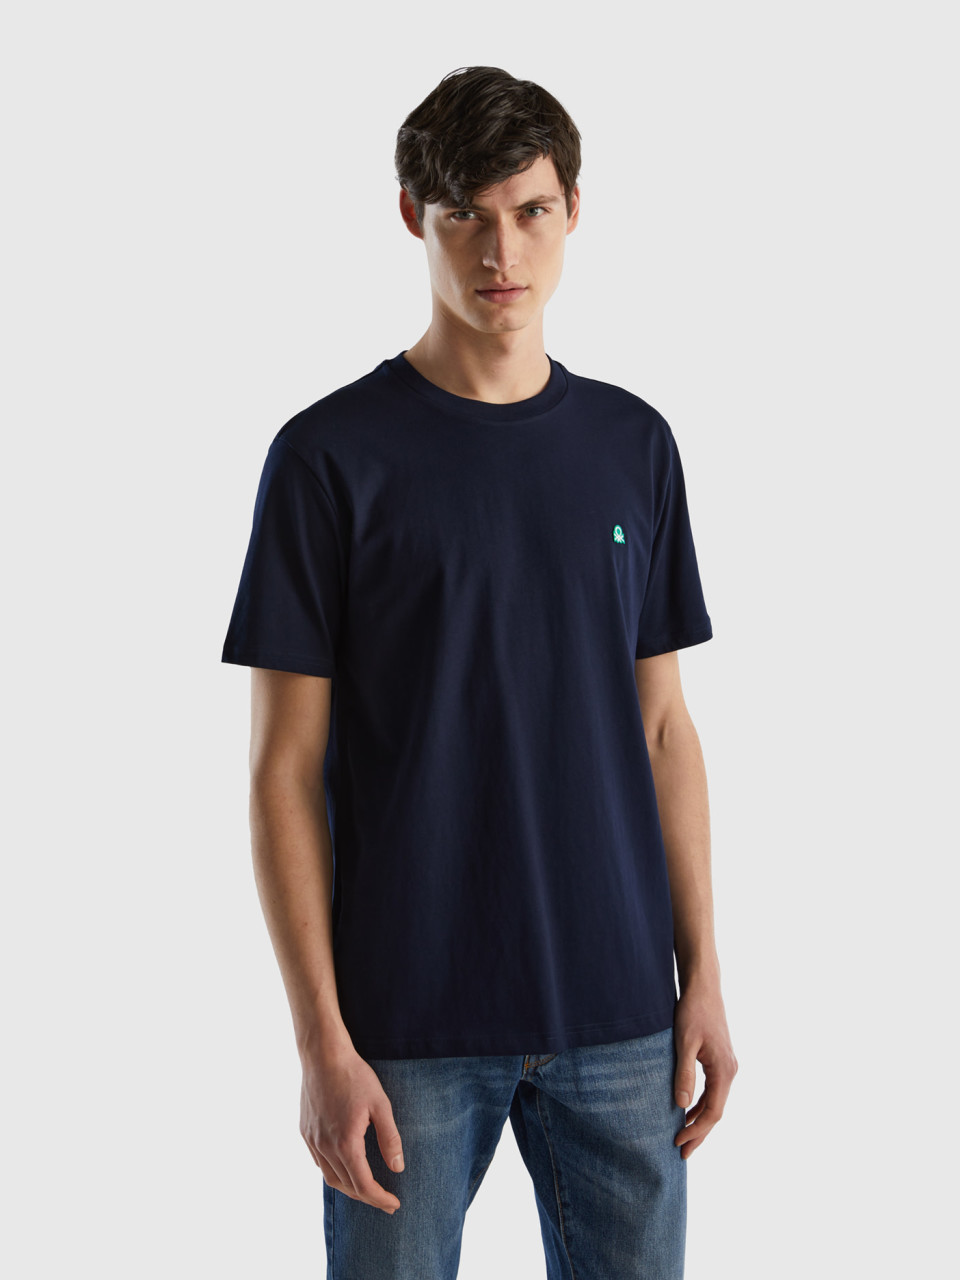 Benetton, T-shirt Basica 100% Cotone Bio, Blu Scuro, Uomo